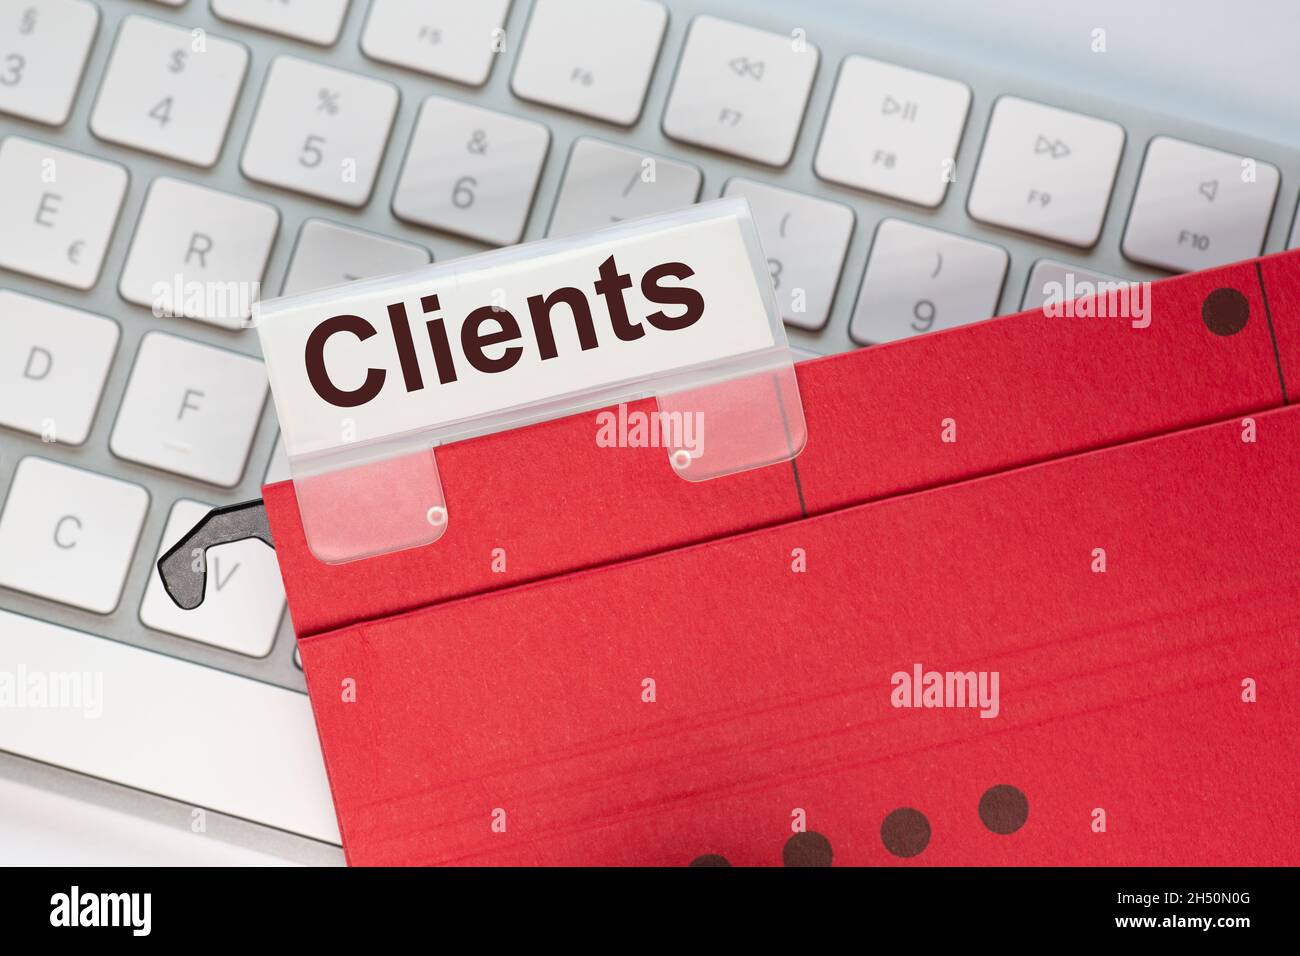 Der rote hängende Ordner auf einer Tastatur verfügt über eine Registerkarte mit dem Wort Clients Stockfoto